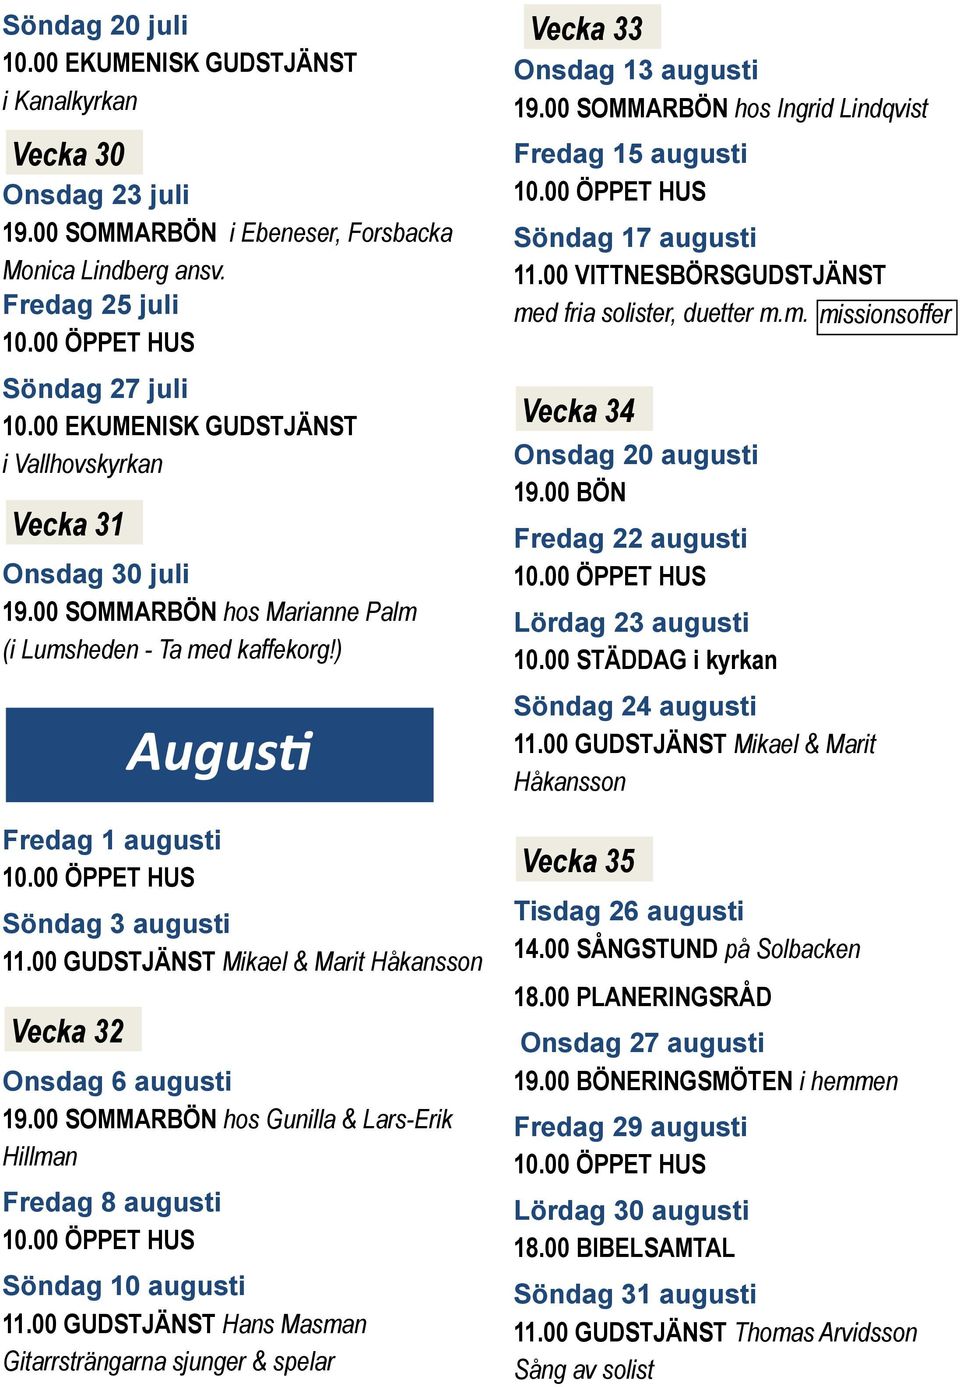 00 GUDSTJÄNST Mikael & Marit Håkansson Vecka 32 Augus Onsdag 6 augusti 19.00 SOMMARBÖN hos Gunilla & Lars-Erik Hillman Fredag 8 augusti Söndag 10 augusti 11.